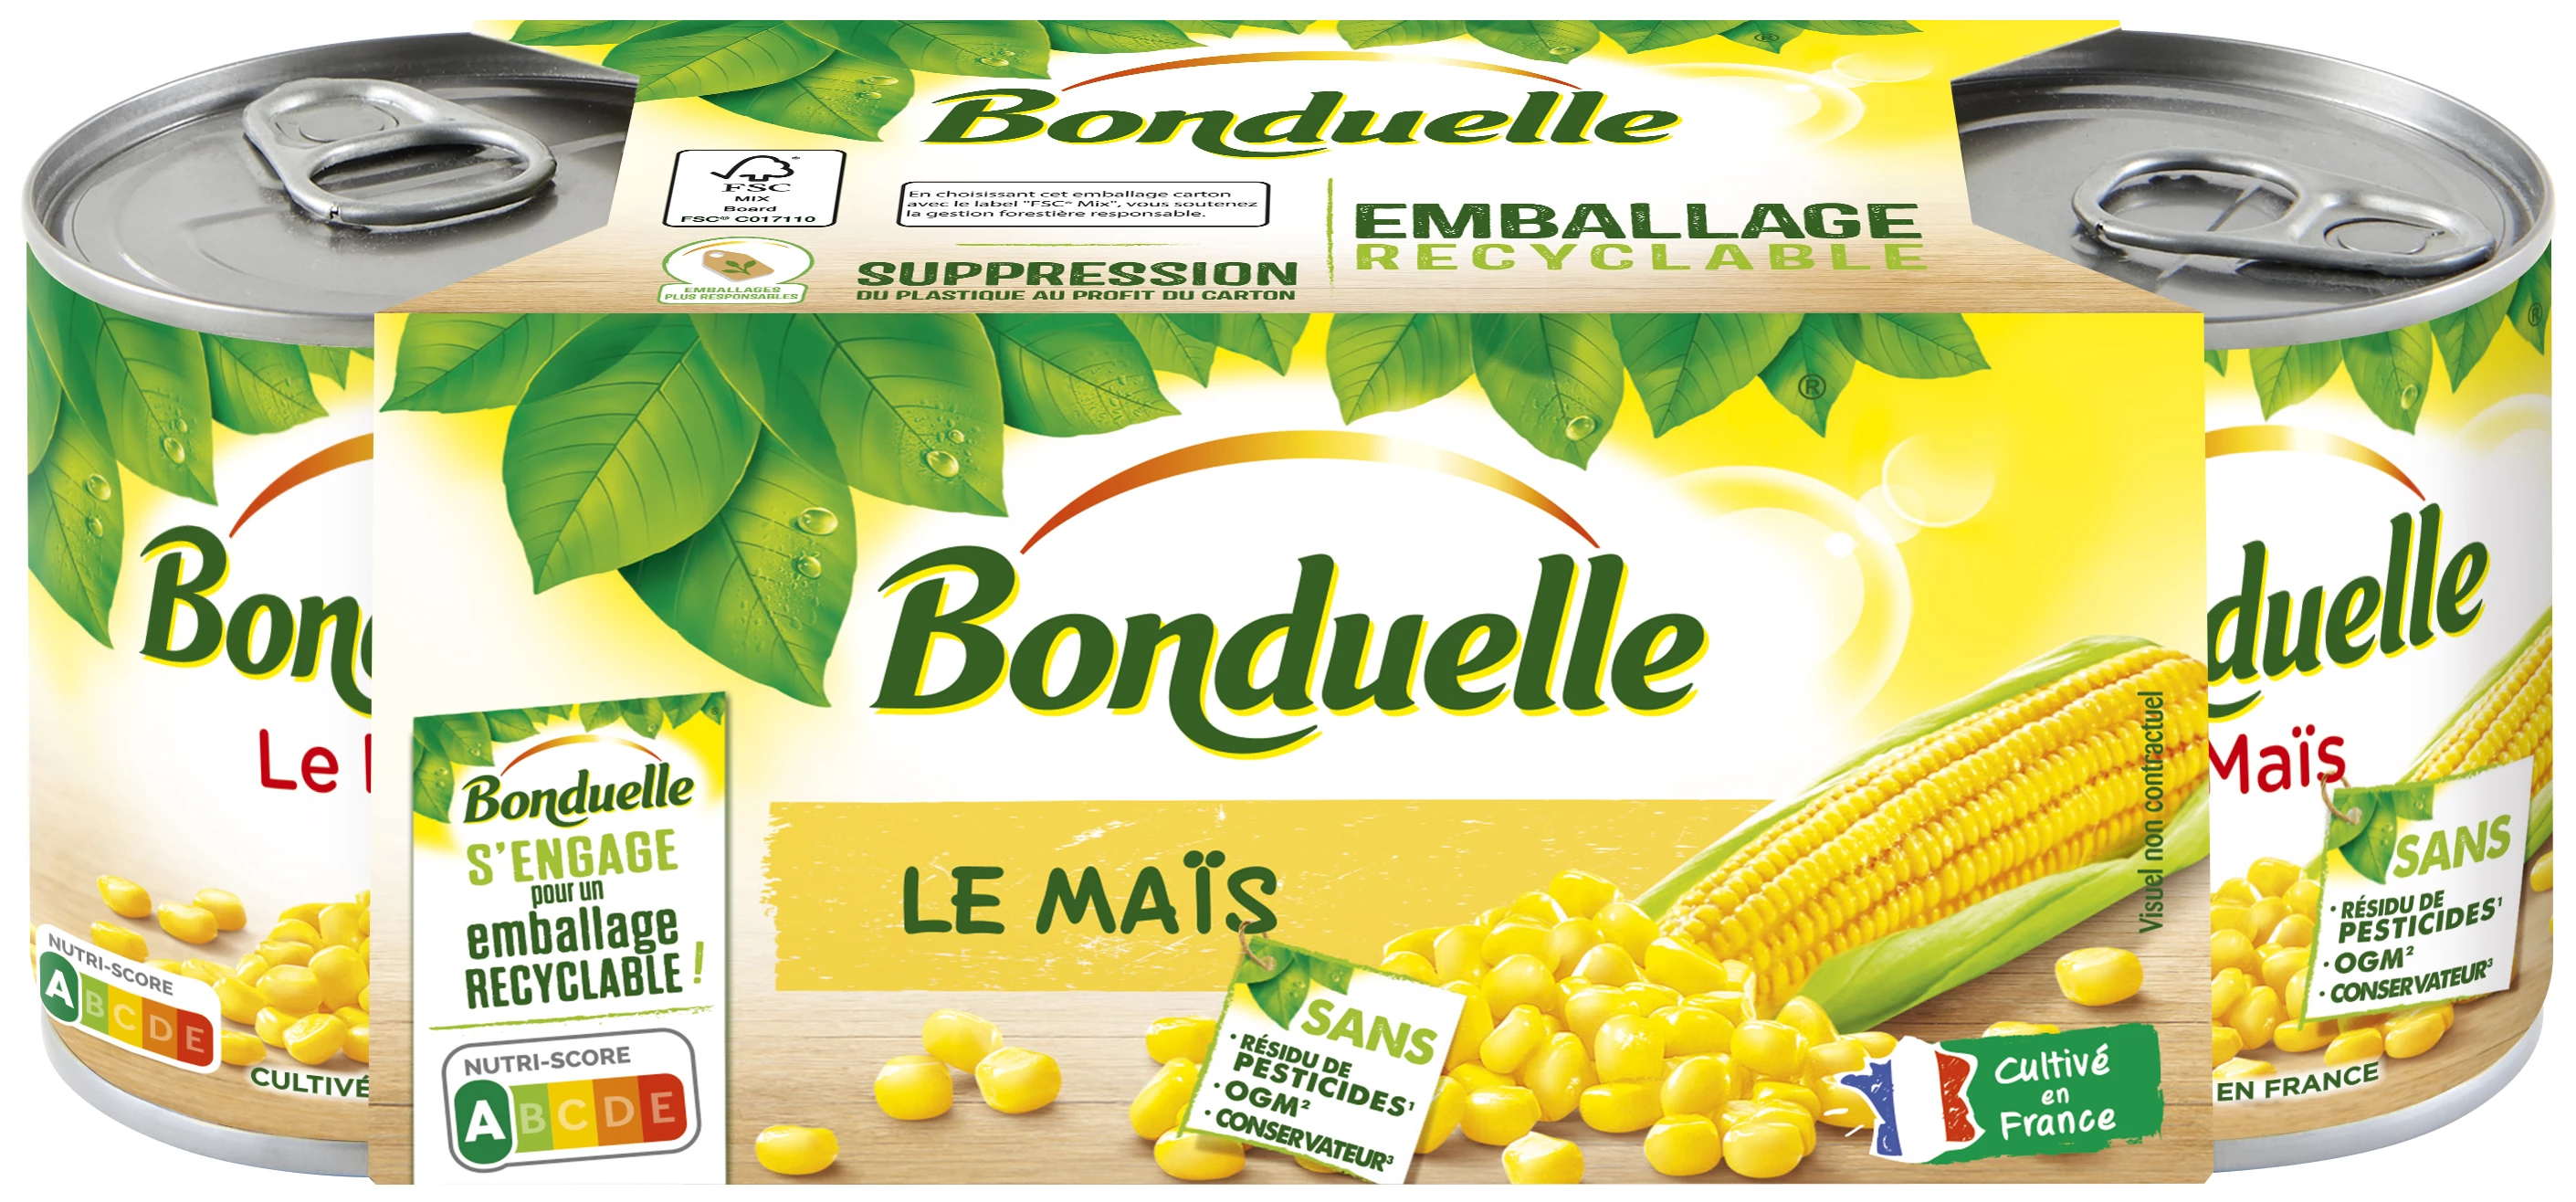 玉米无农药残留； 3X140克 -  BONDUELLE